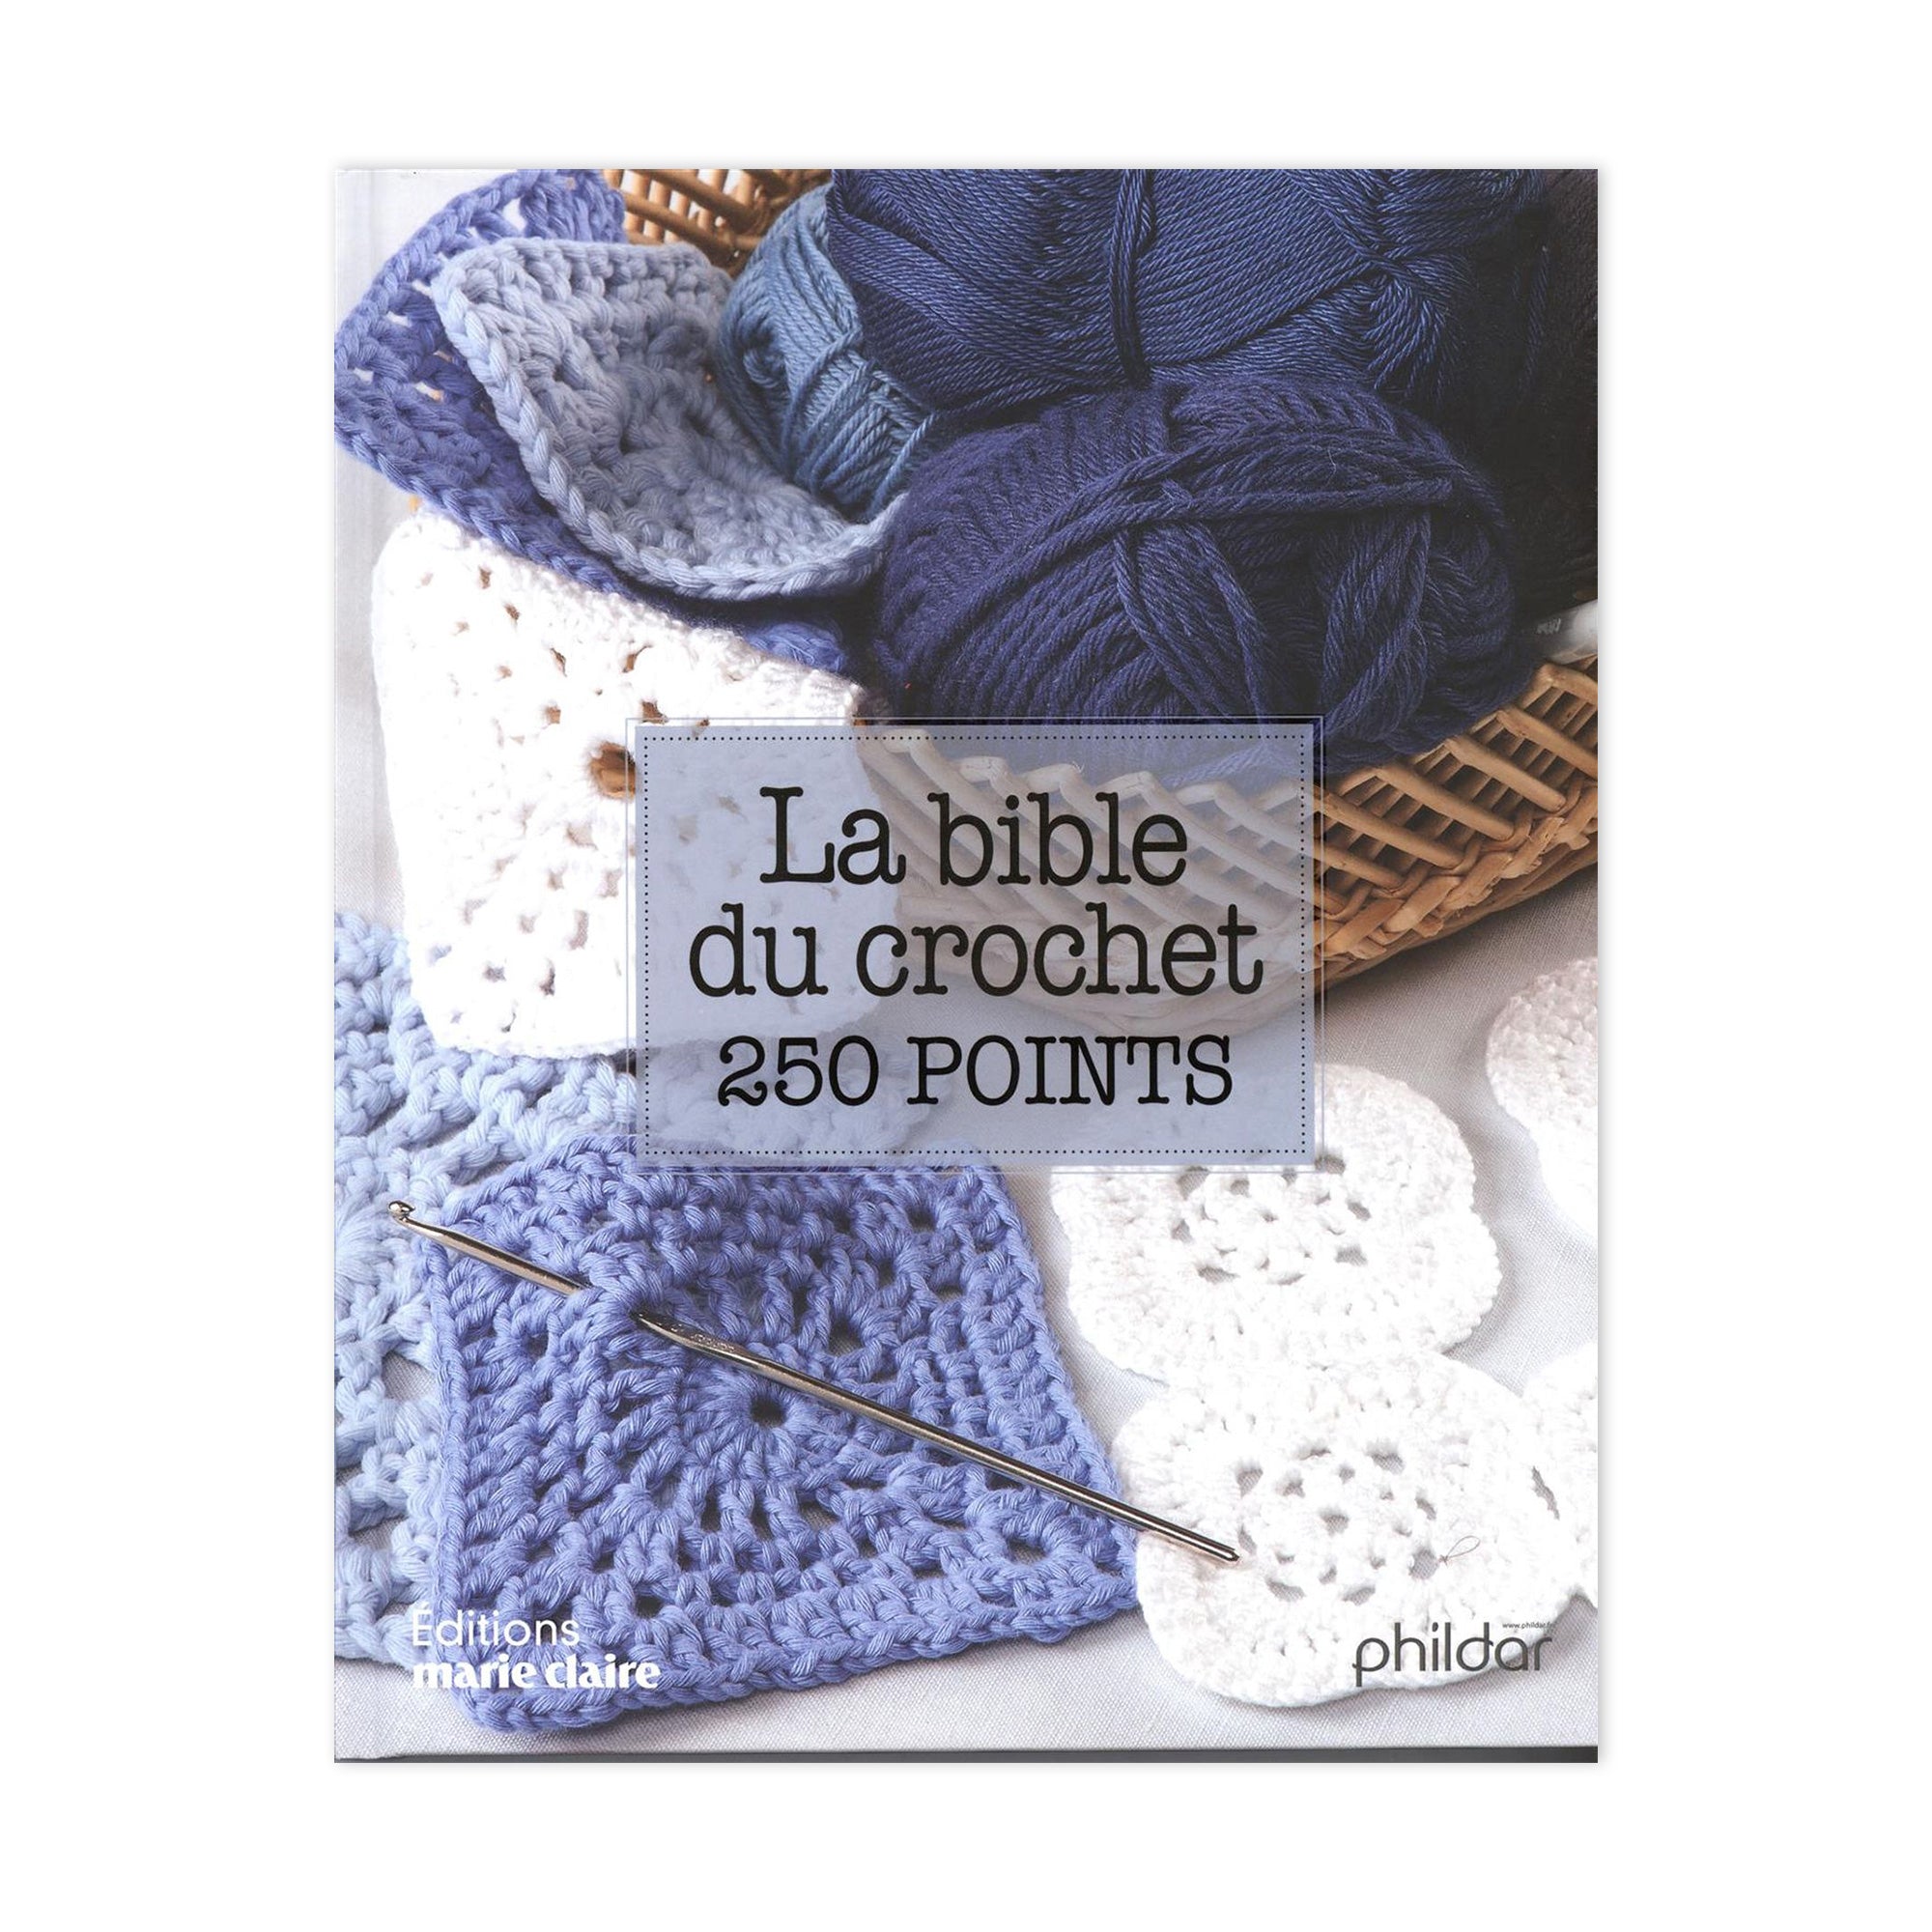 Marie-Claire apprendre à crocheter année 2013-PDF